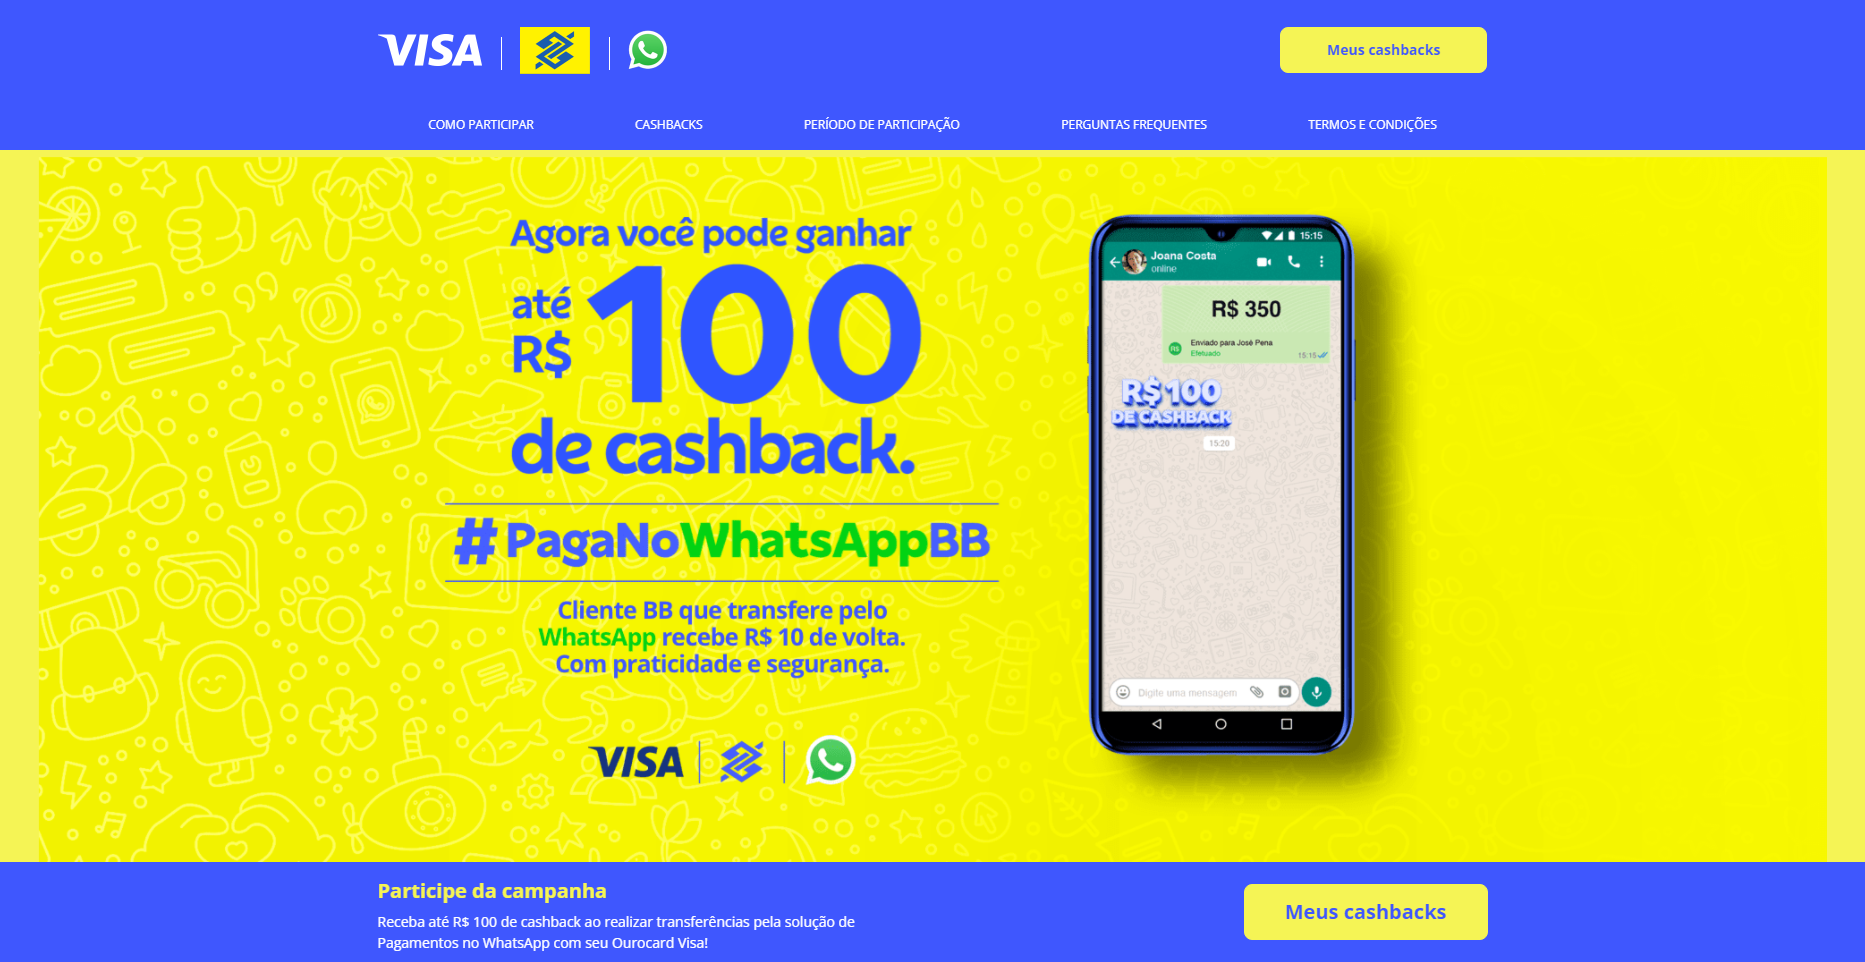 Ganhe até R$ 100 de cashback fazendo pagamentos pelo WhatsApp